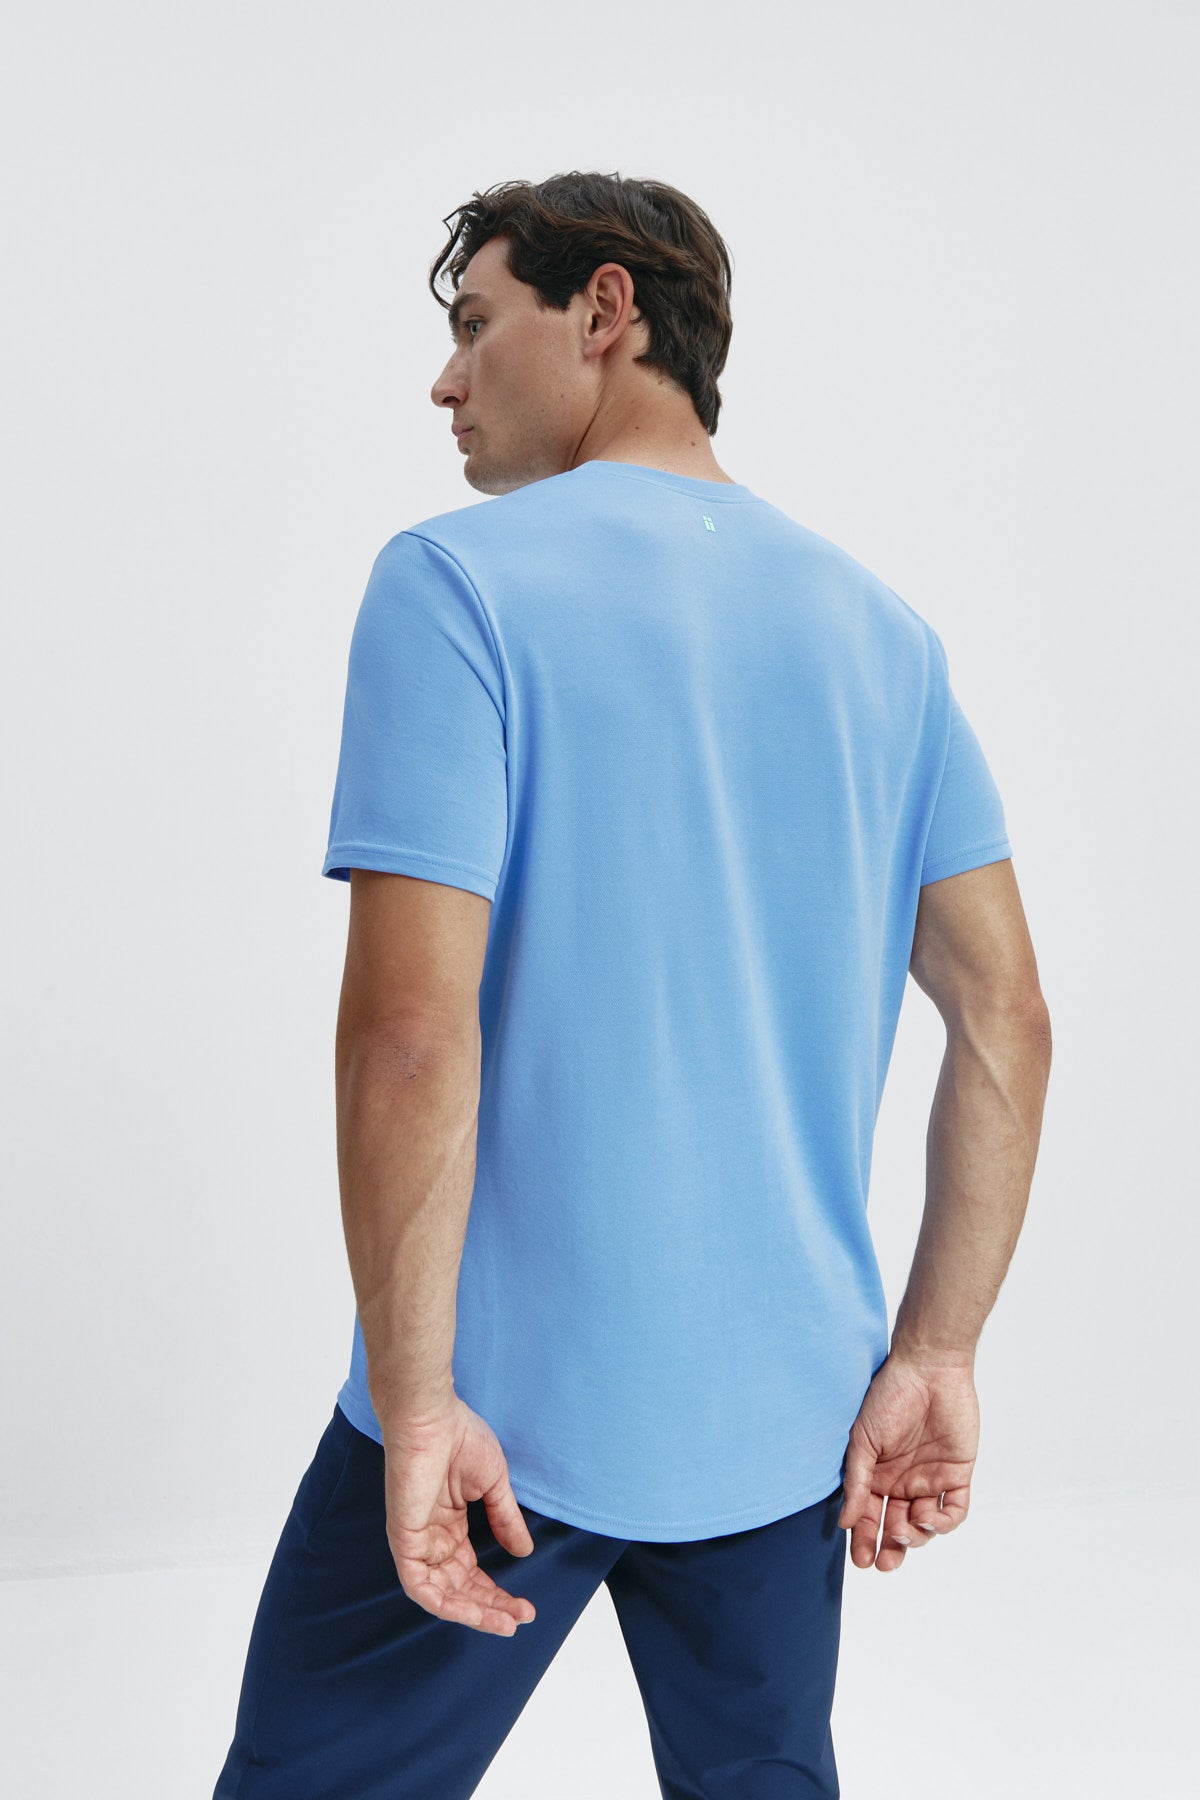 Camiseta de hombre en azul atlas de Sepiia, estilo y comodidad en una prenda duradera. Foto espalda